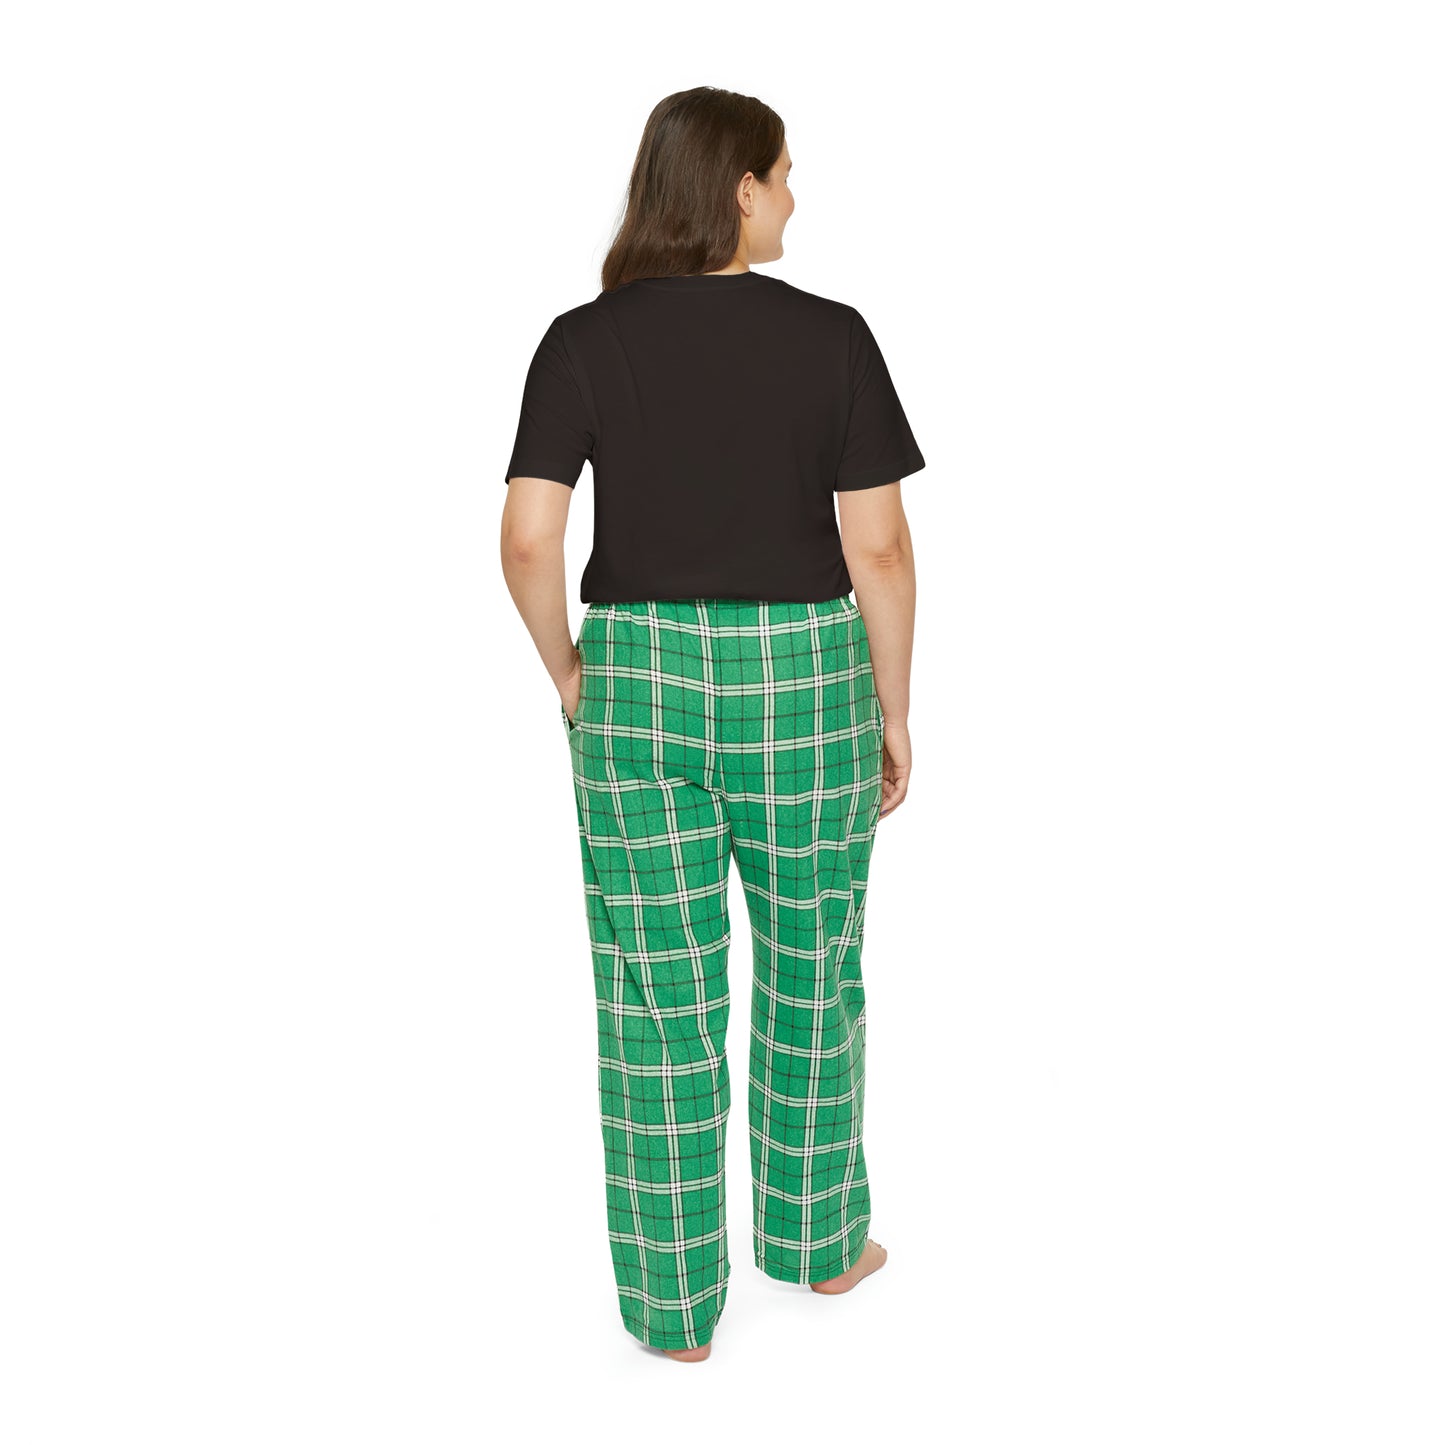 I'm Feeling Picklish women's short sleeve pajama set